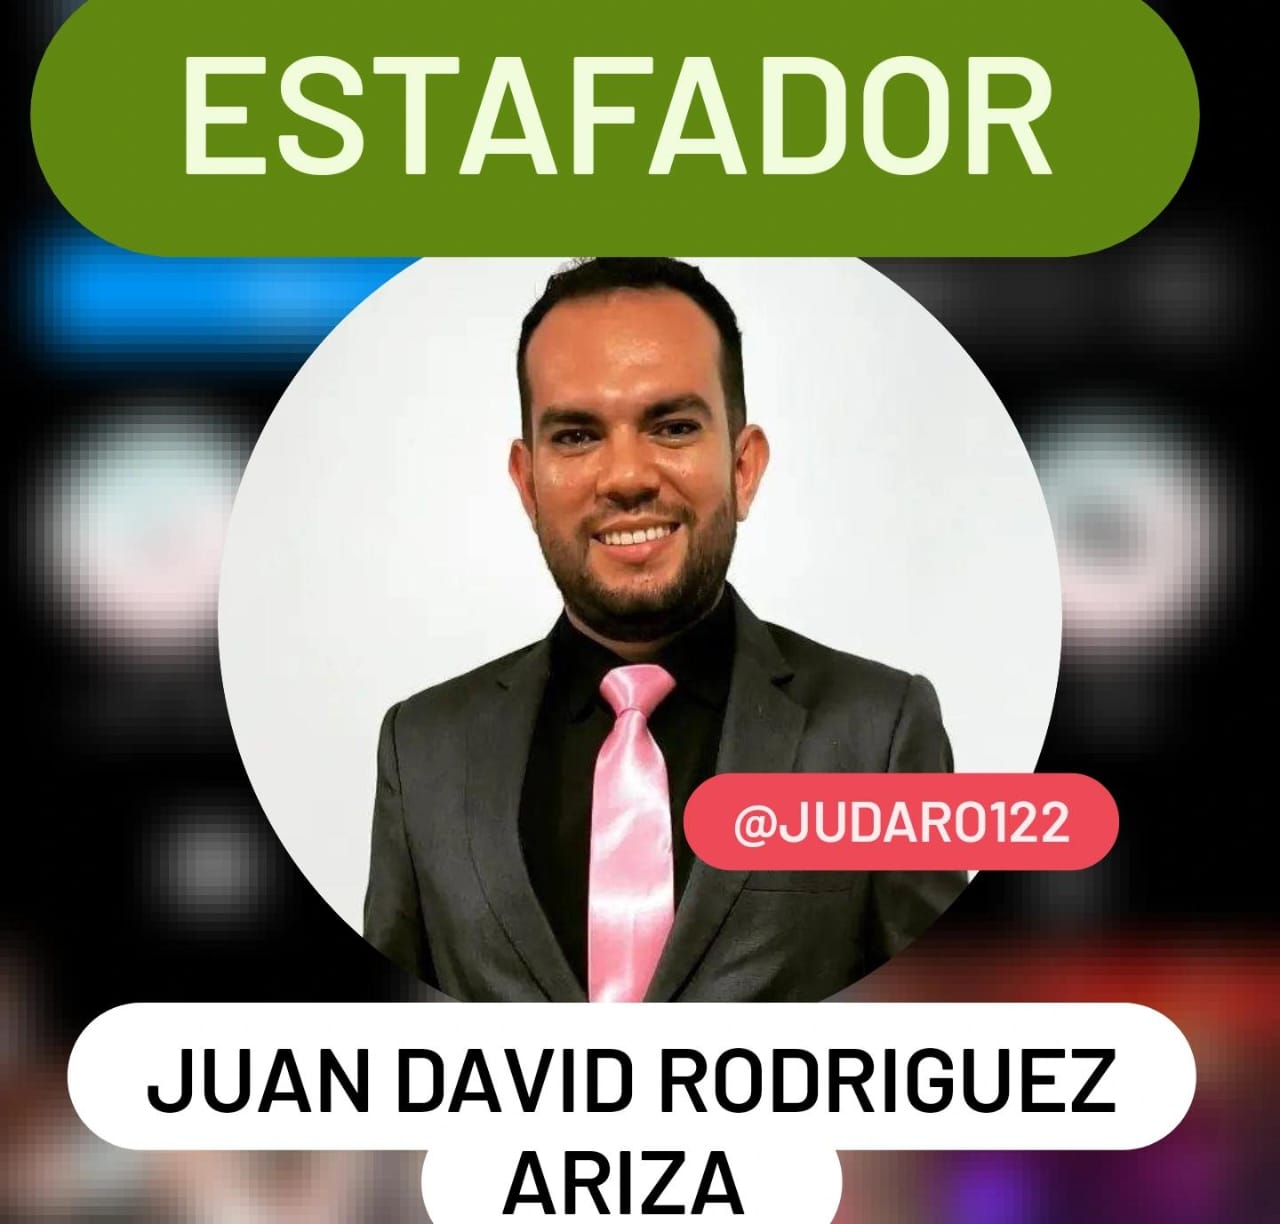 Juan David Rodríguez Ariza estafador